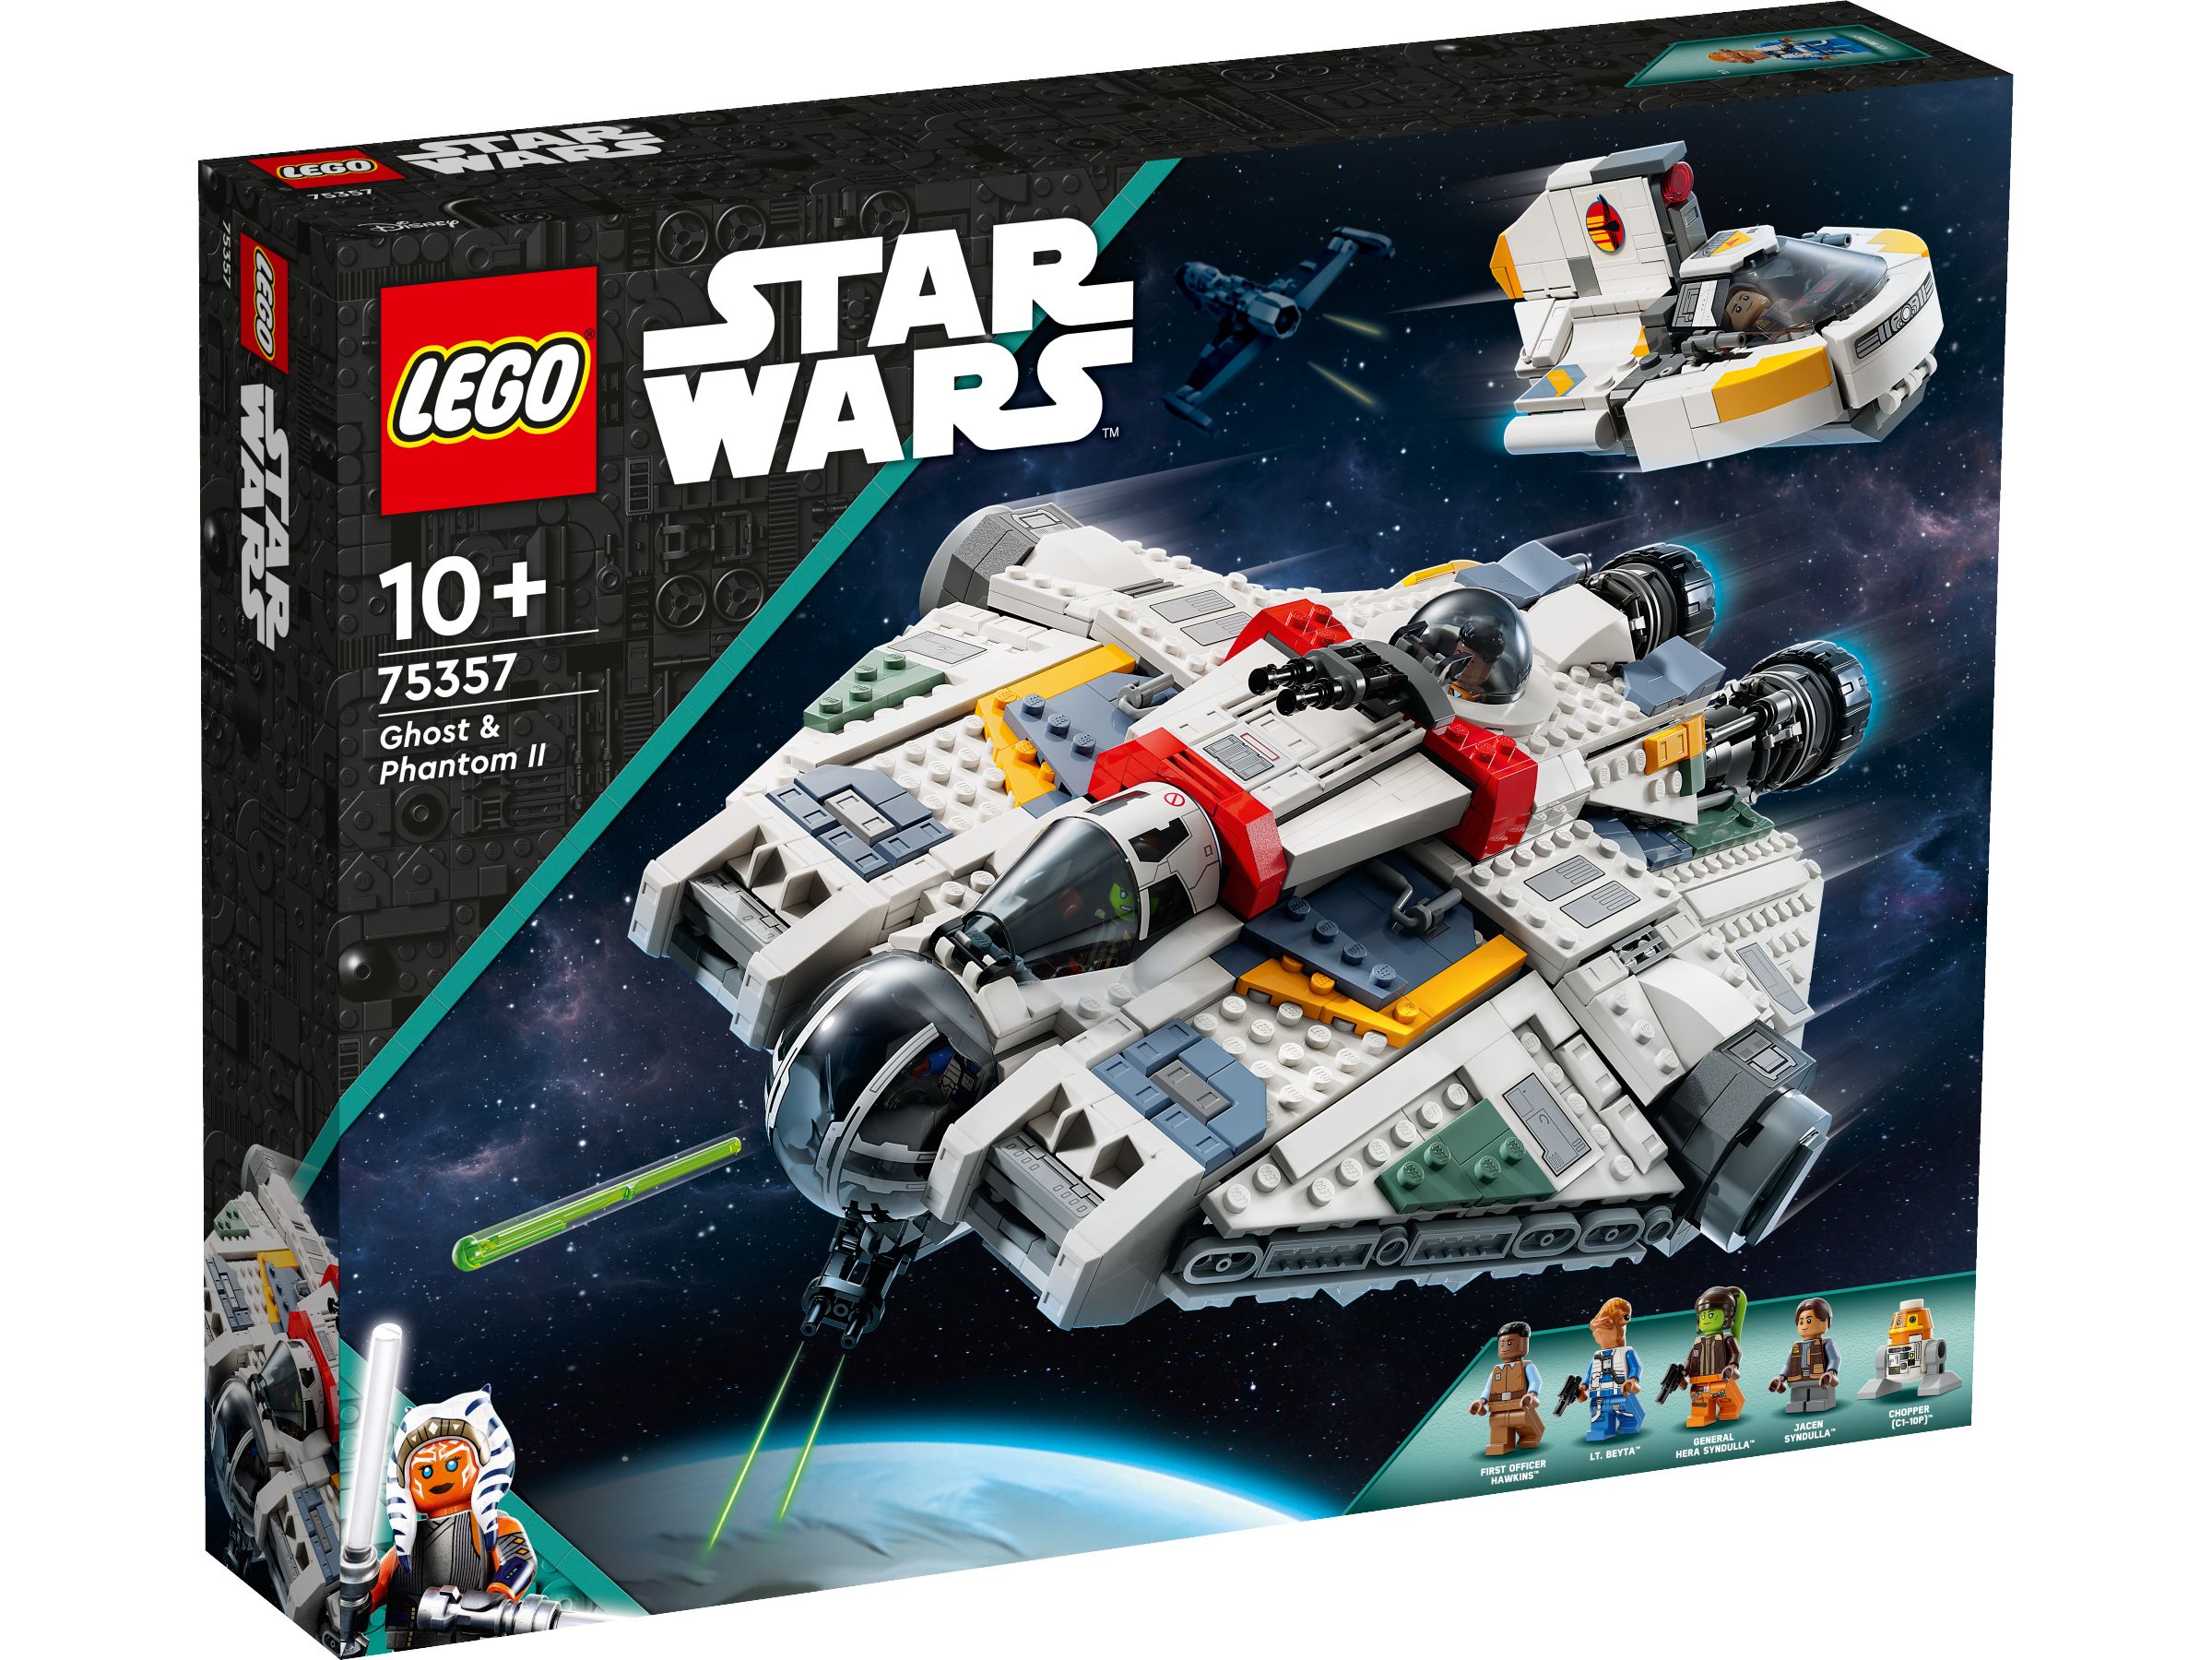 LEGO Star Wars 75357 Ghost & Phantom II LEGO_75357_Box1_v29.jpg